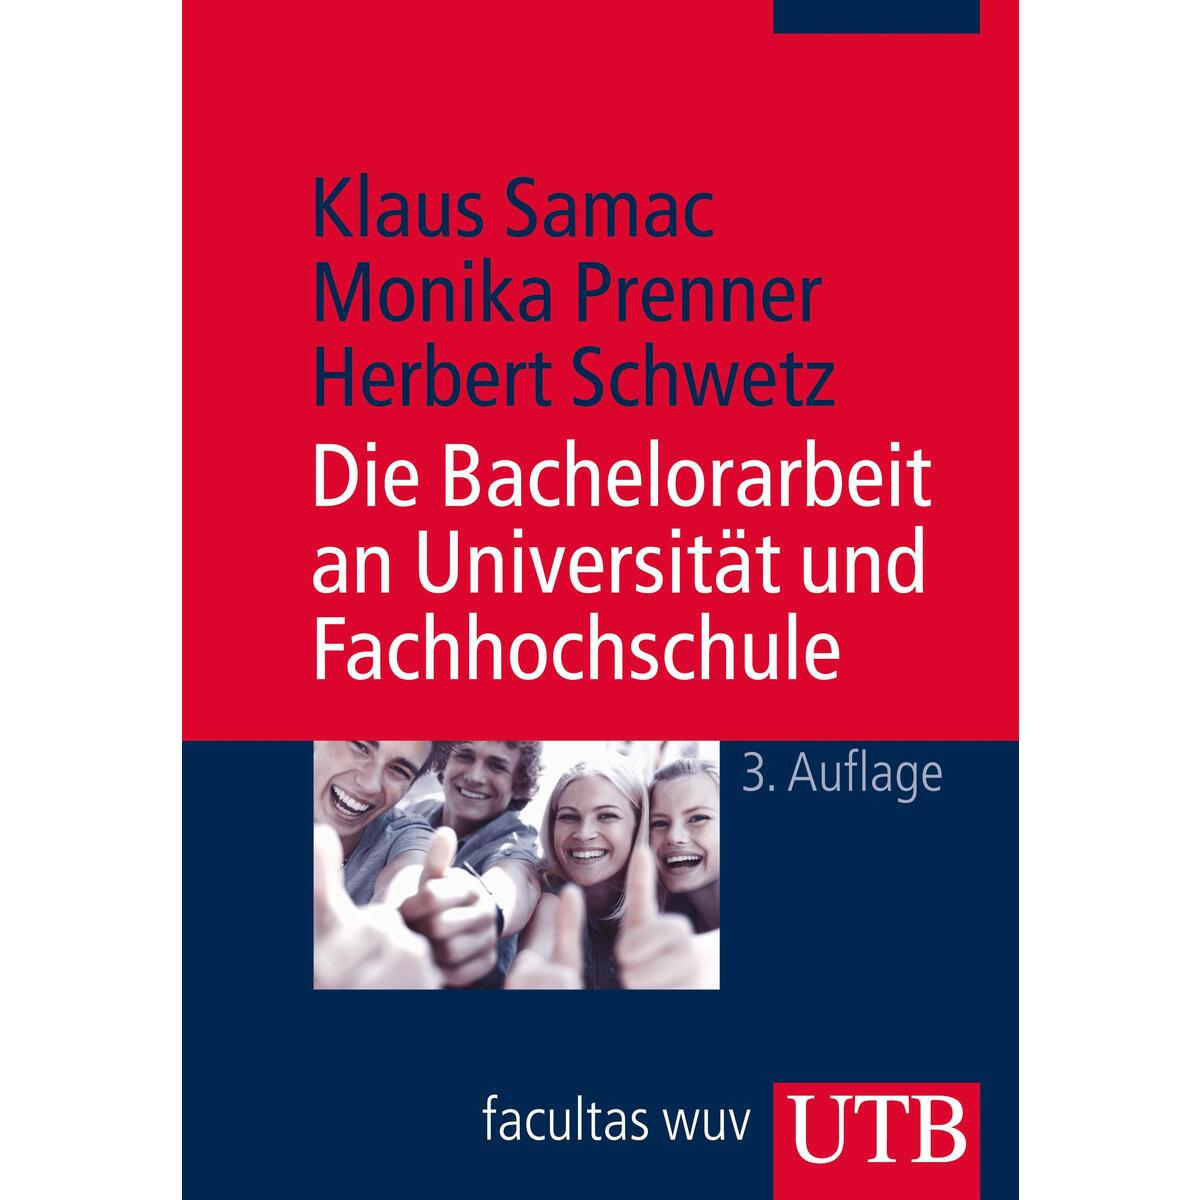 Die Bachelorarbeit an Universität und Fachhochschule von UTB GmbH